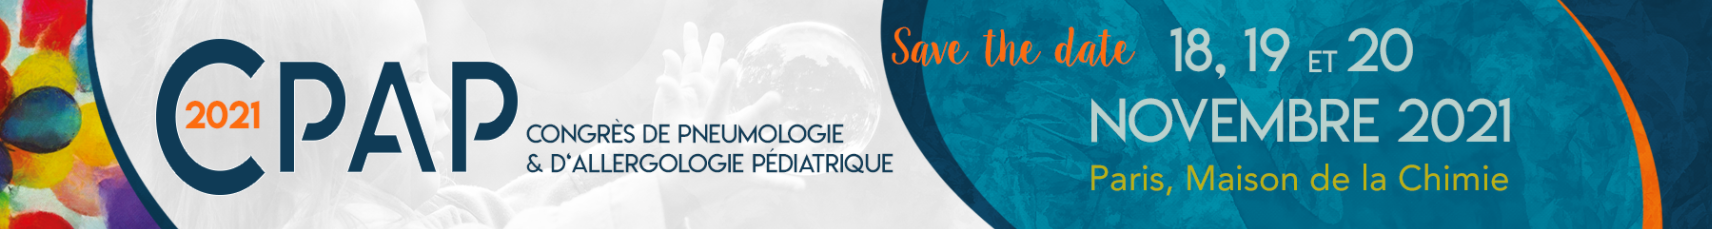 Congrès de Pneumologie et d'allergologie Pédiatrique - CPAP2021